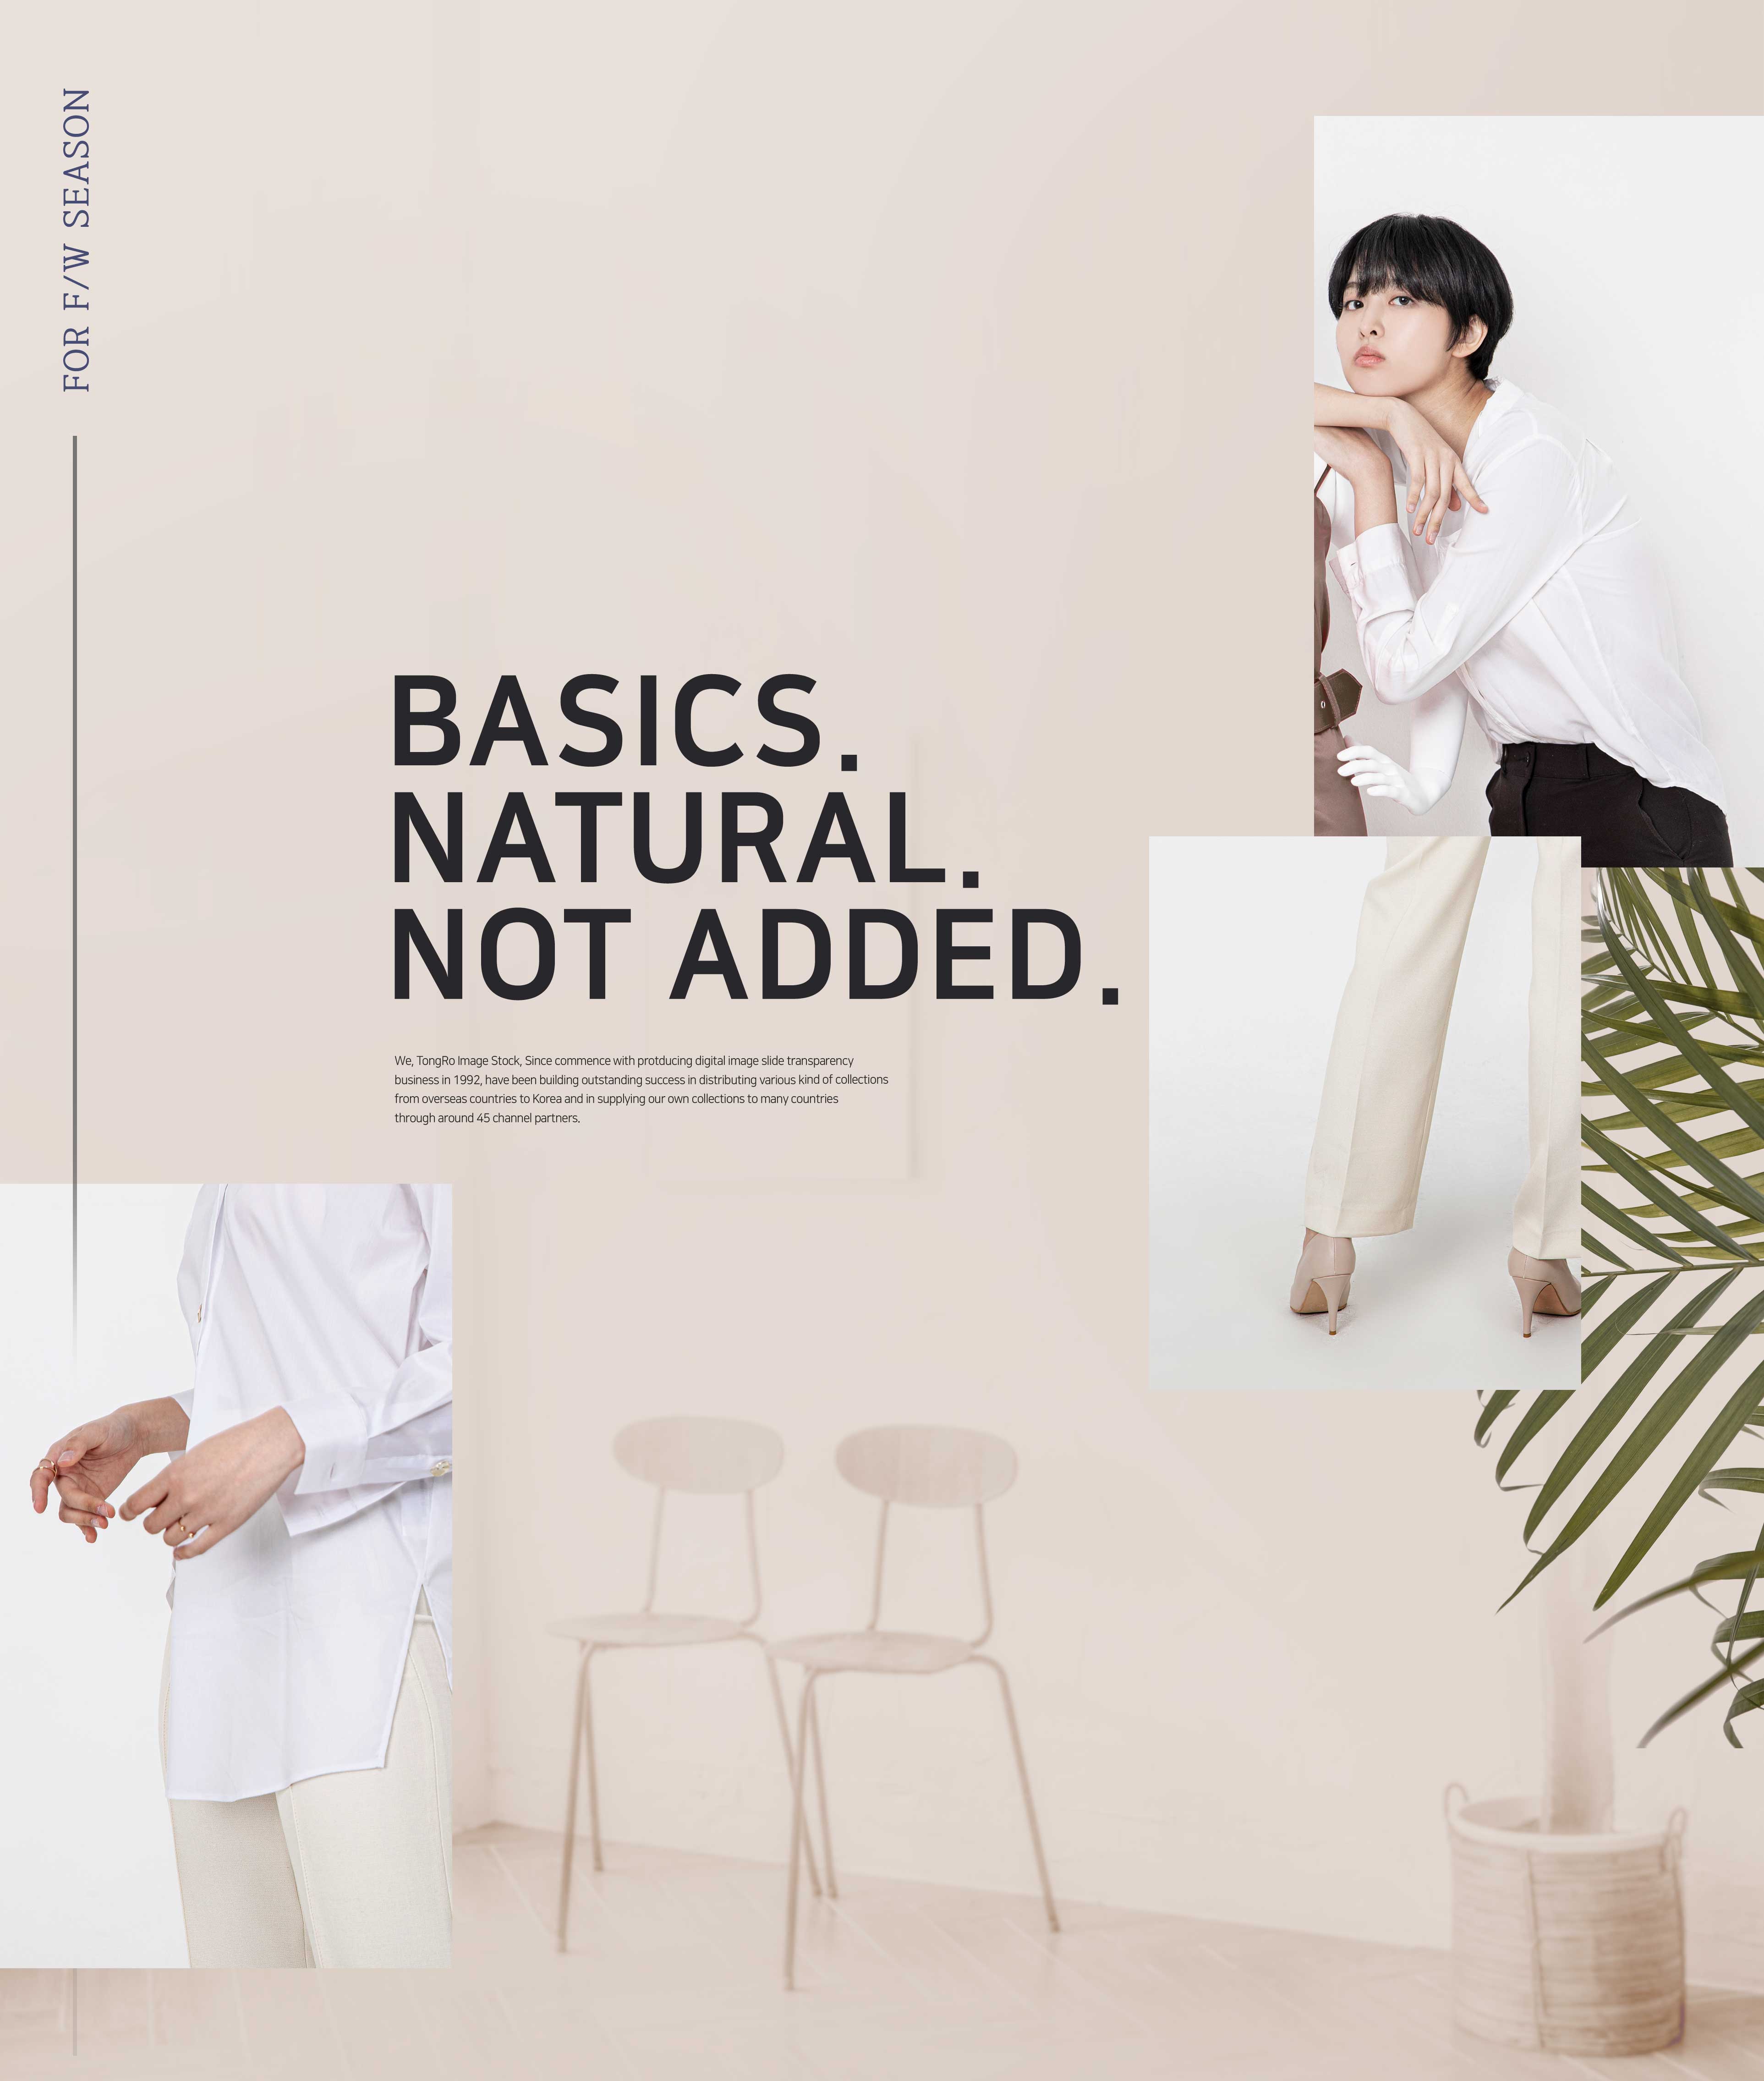 服装高端品牌推广主题海报设计韩国素材设计素材模板